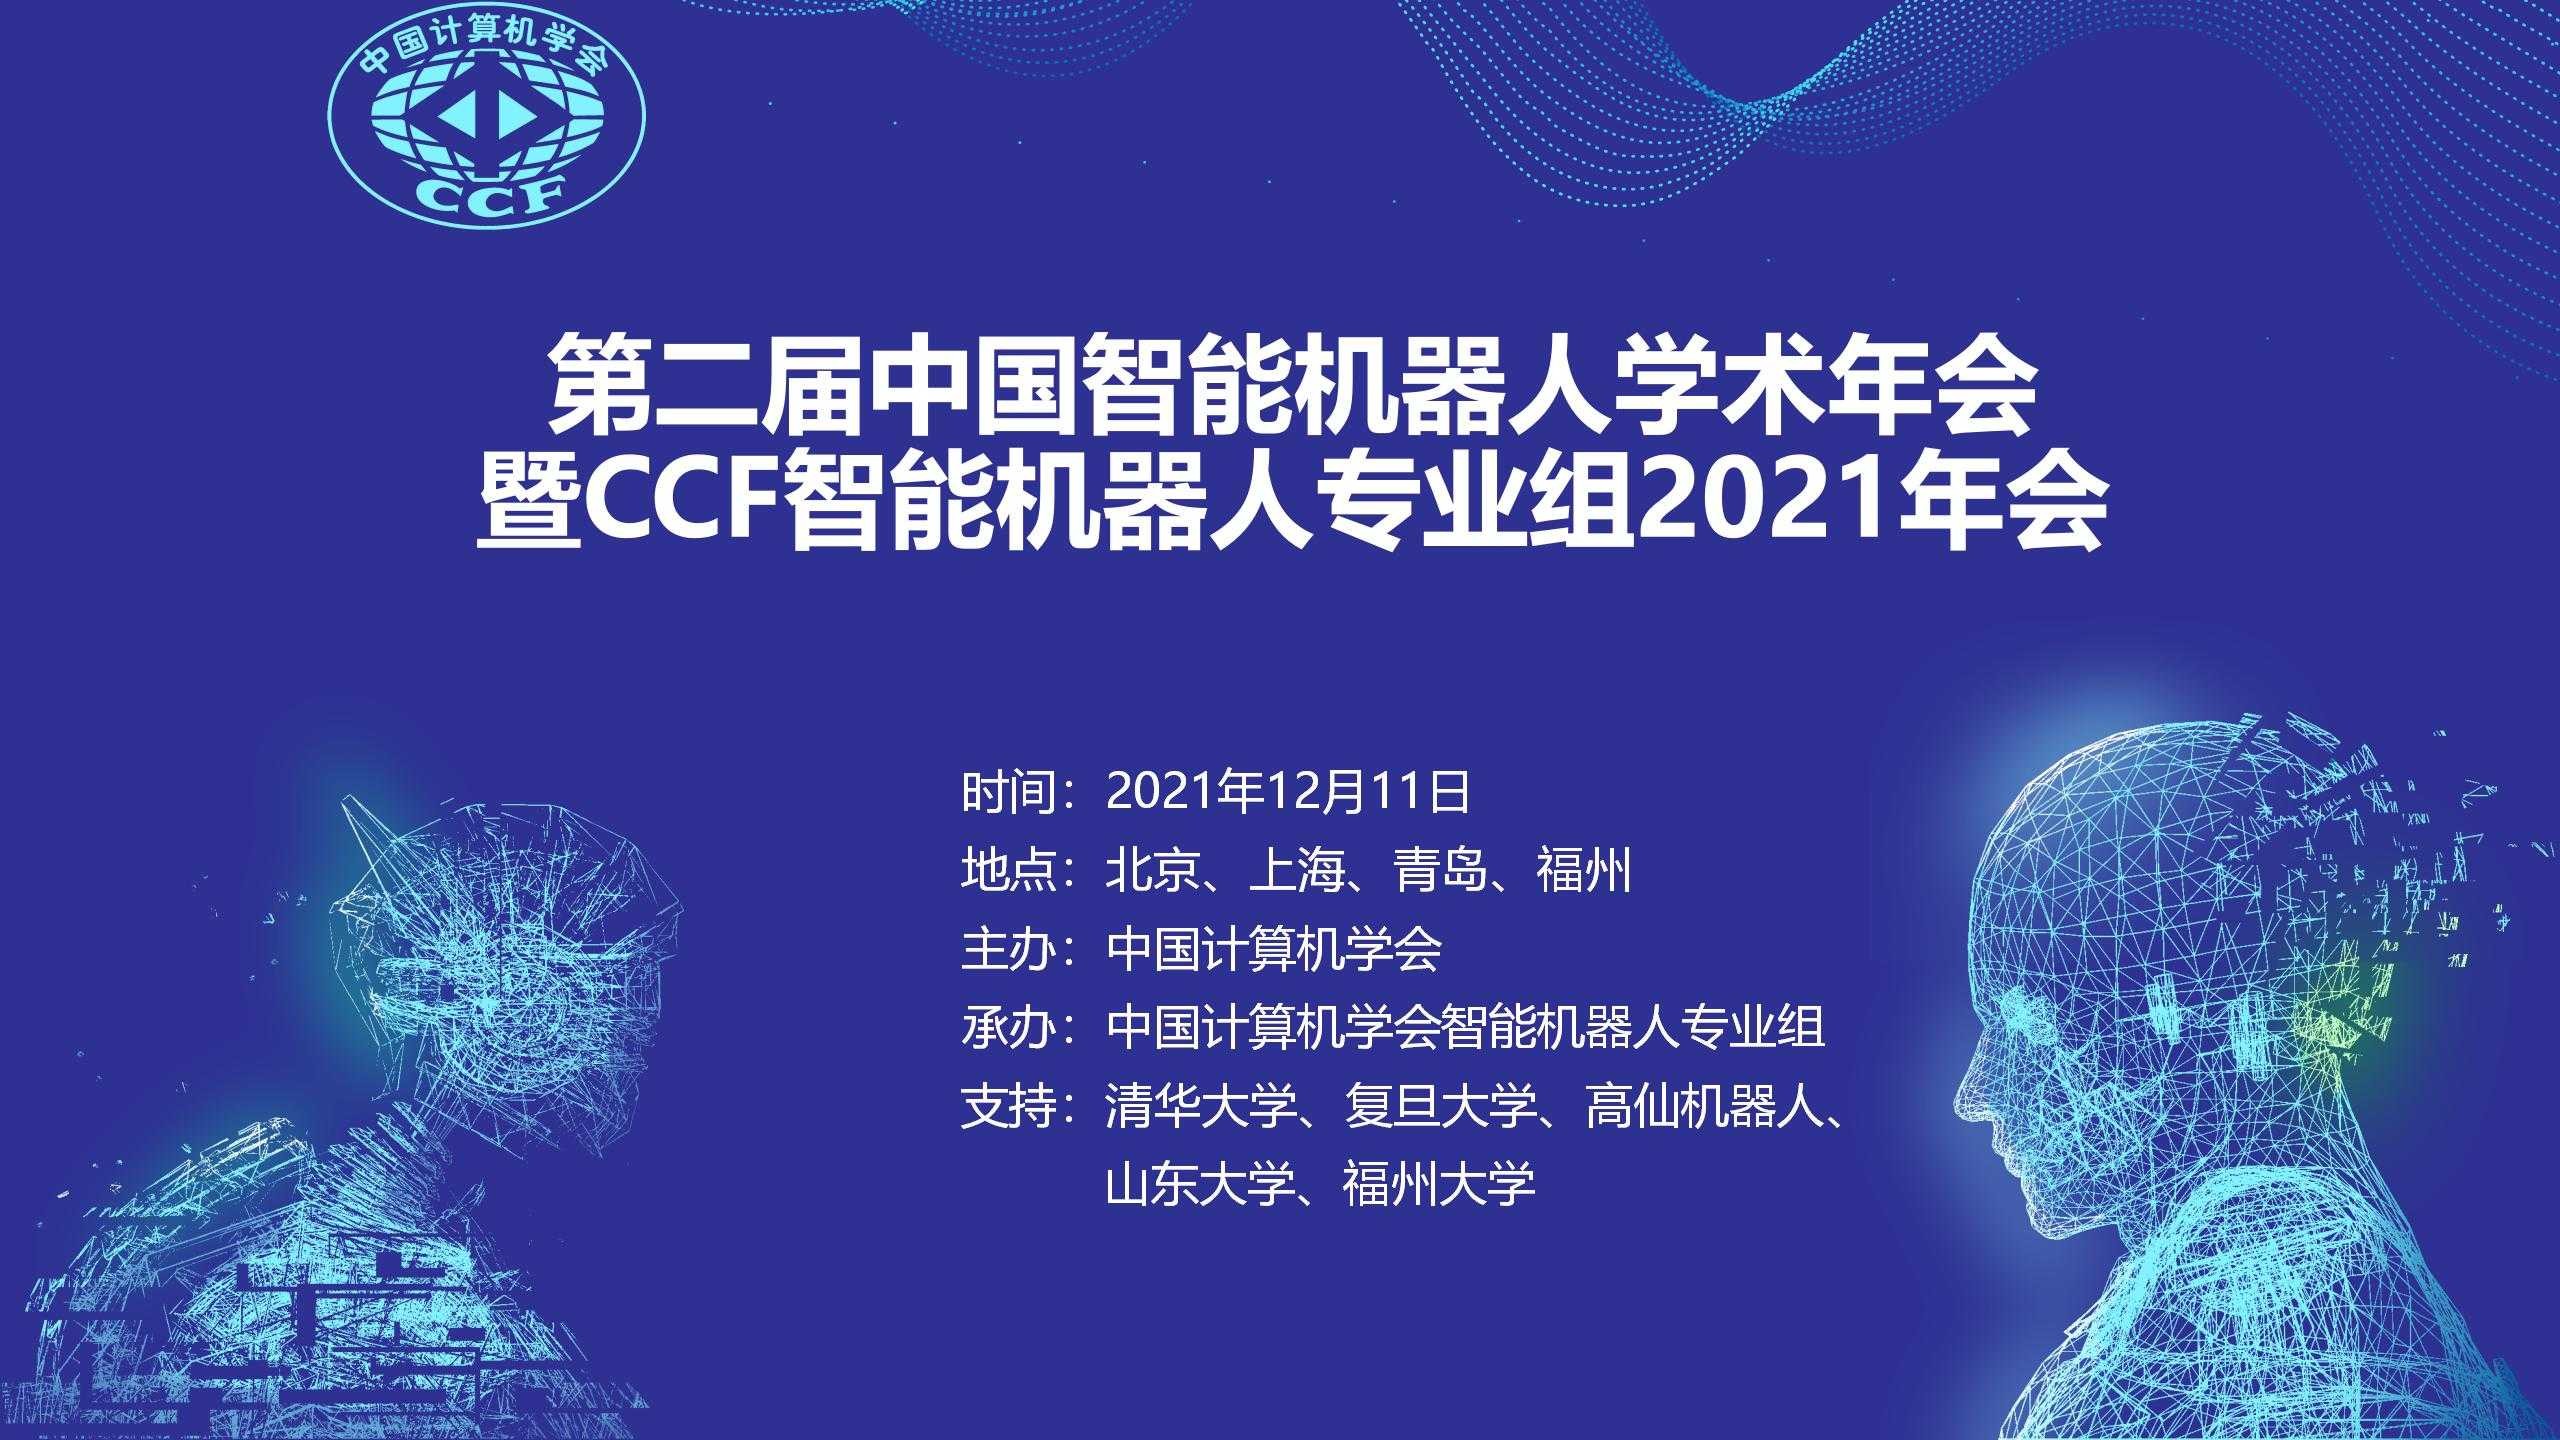 大佬云集丨高仙邀您參加中國智能機器人學術年會